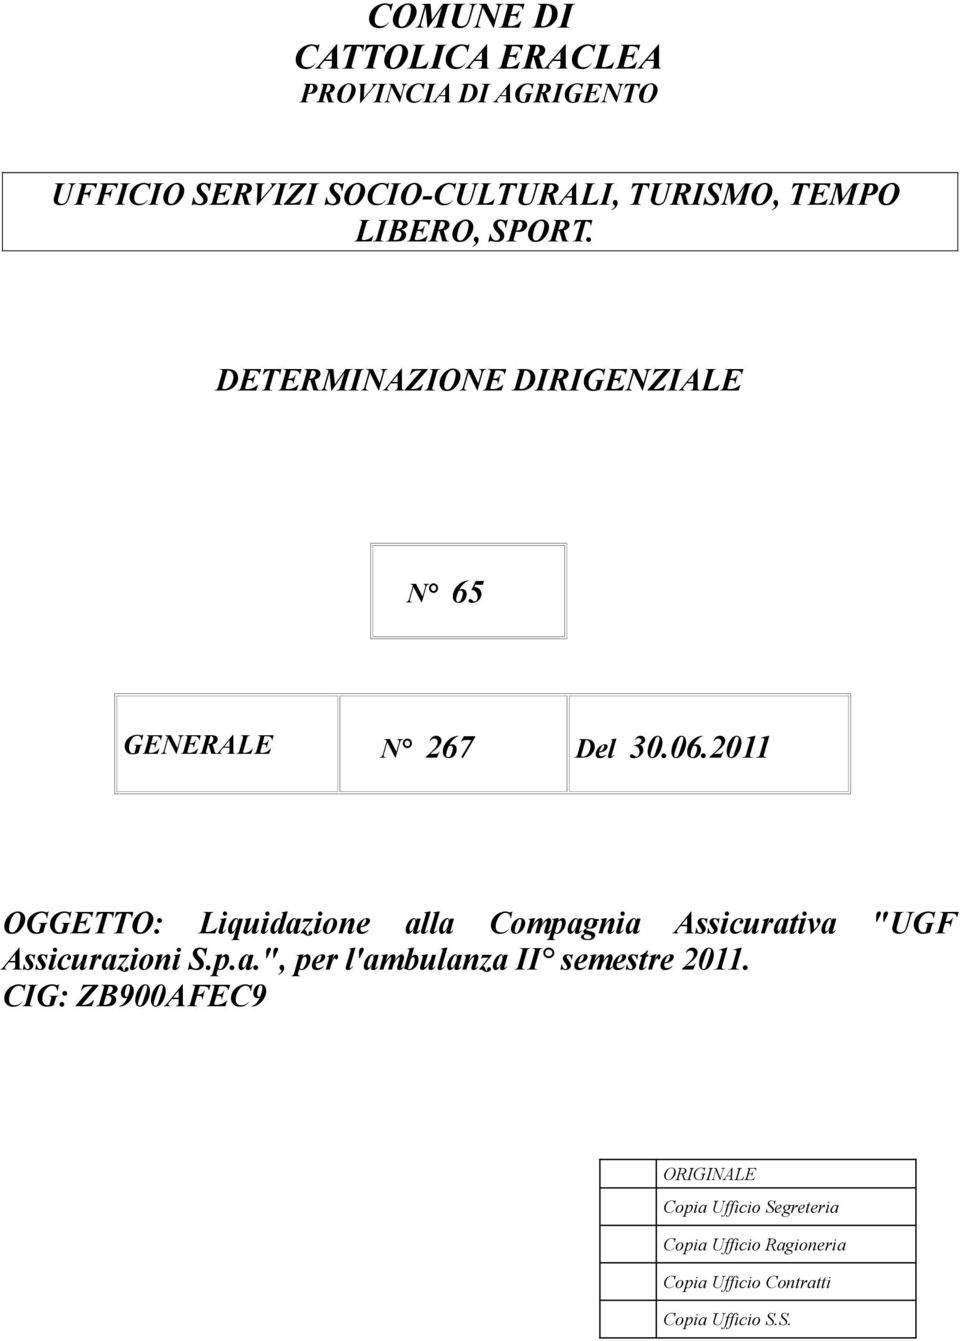 2011 OGGETTO: Liquidazione alla Compagnia Assicurativa "UGF Assicurazioni S.p.a.", per l'ambulanza II semestre 2011.